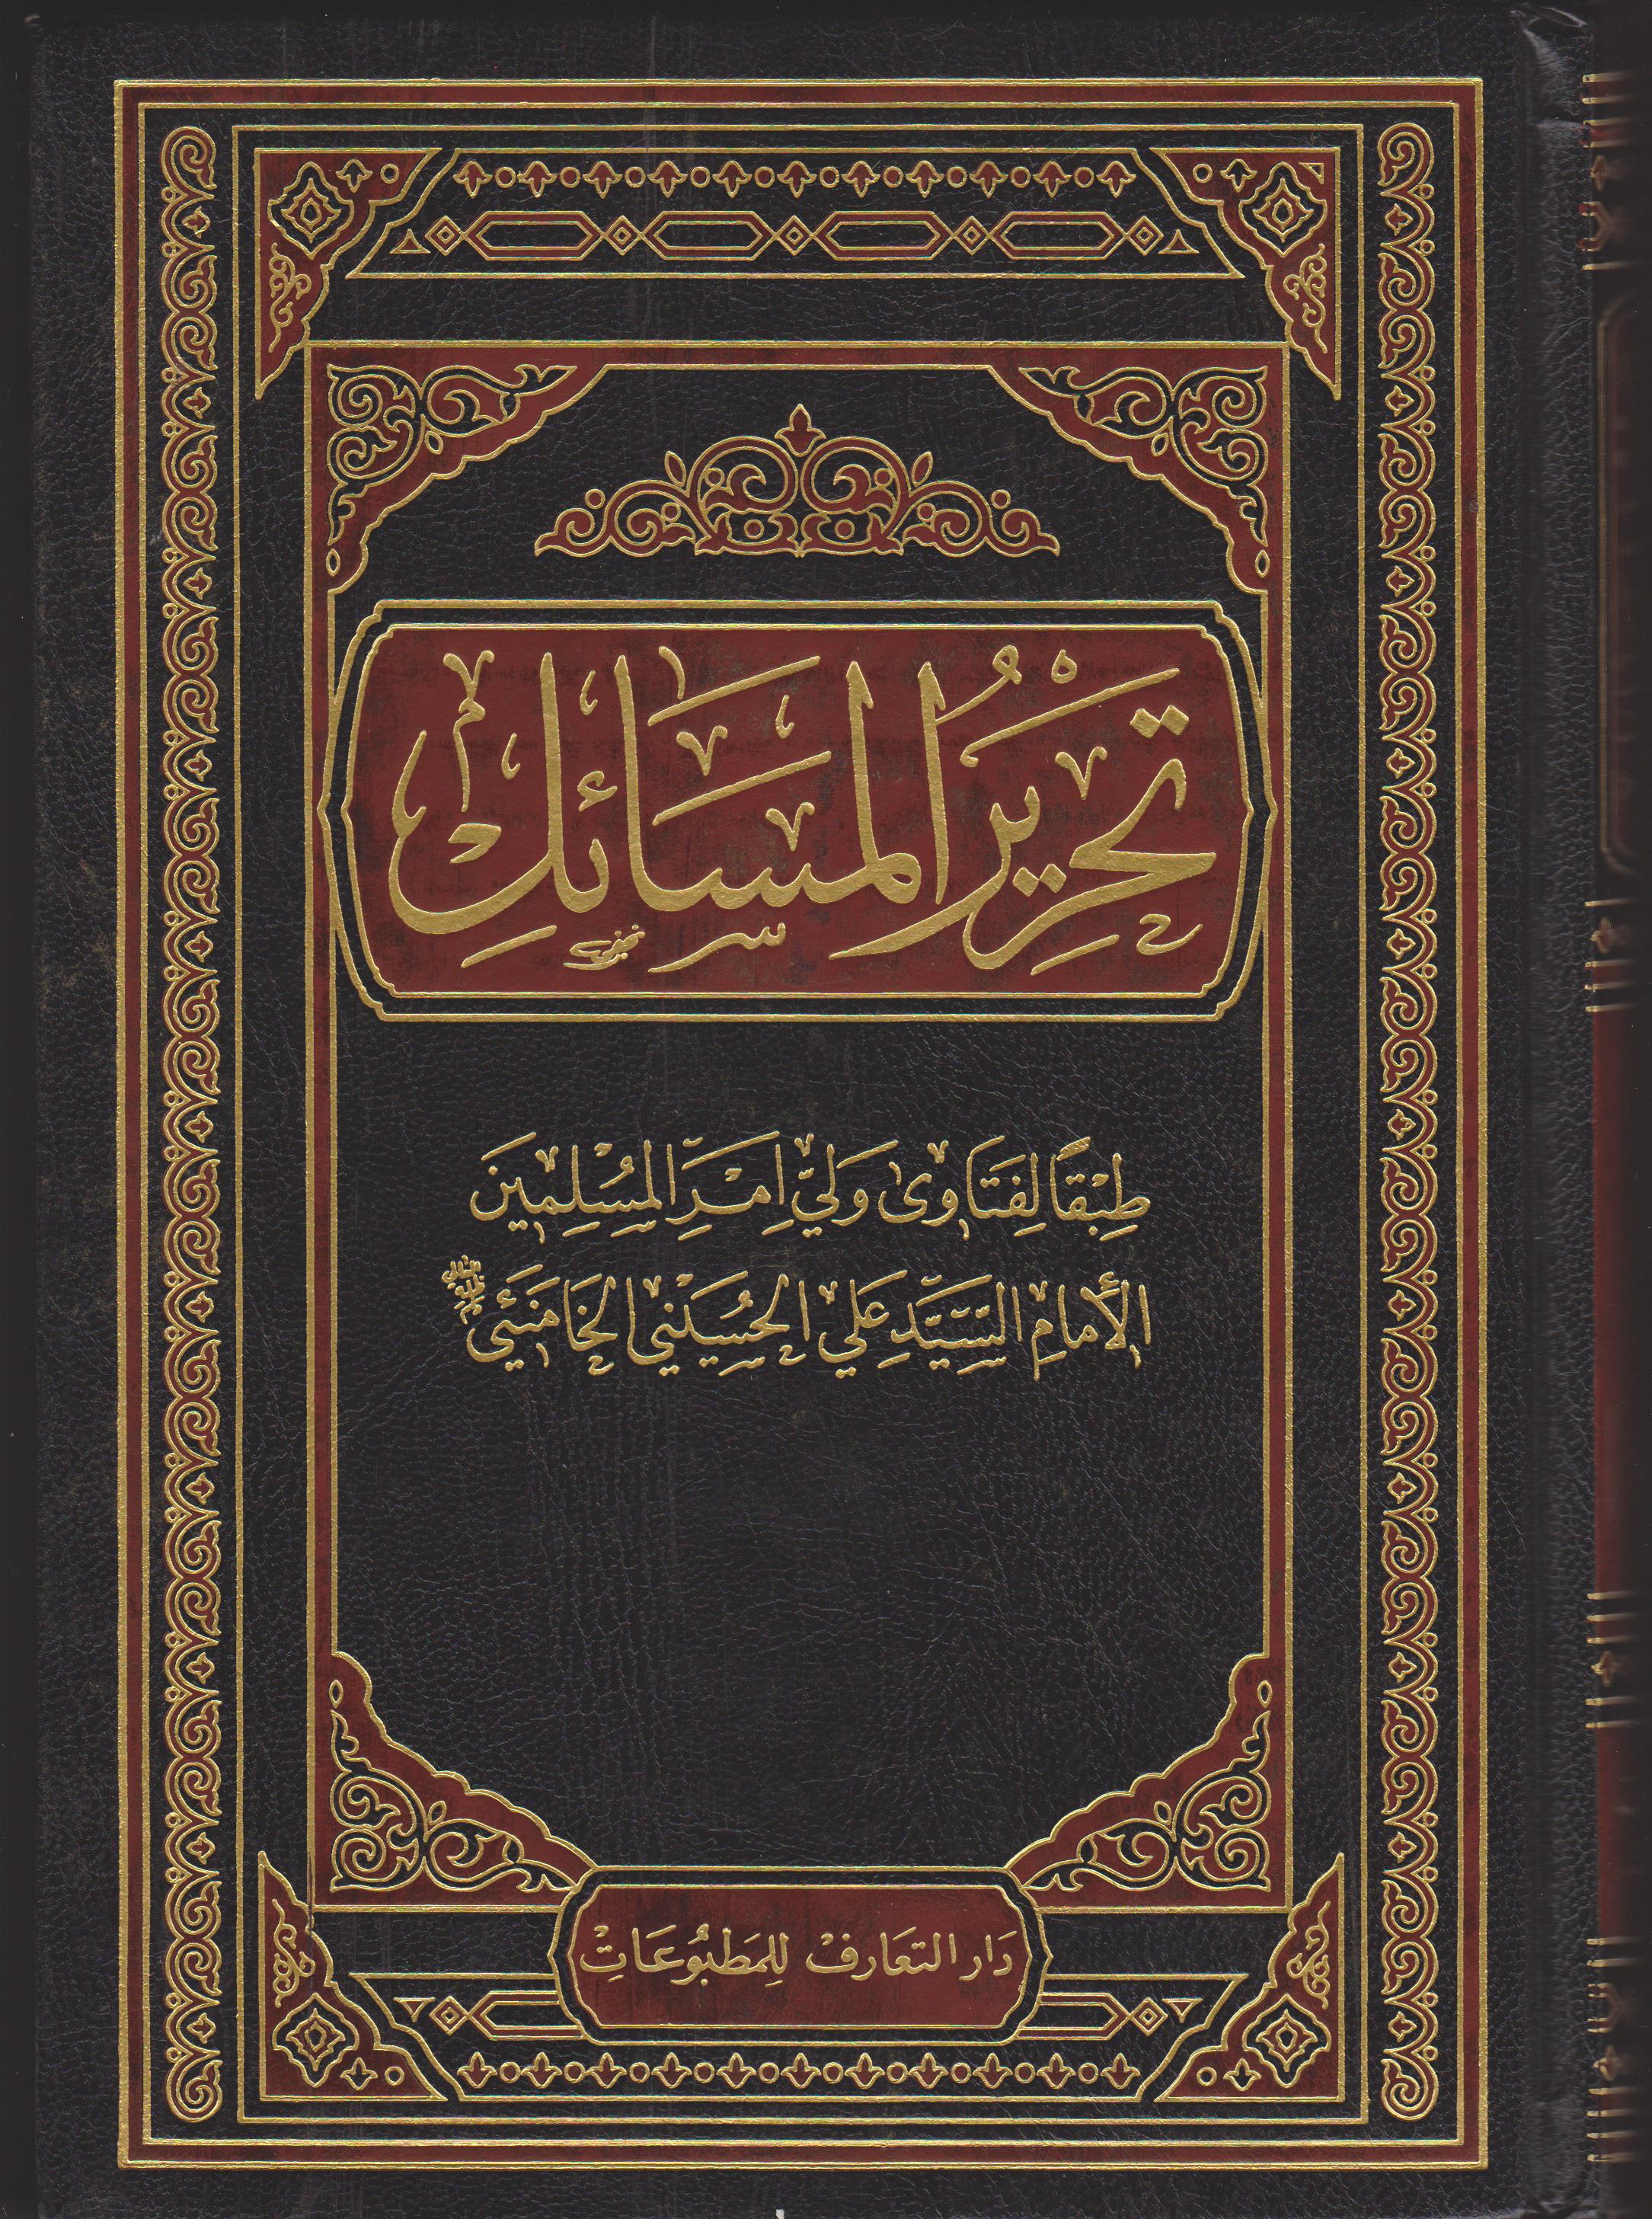 Tahreer Al Massail - Arabic